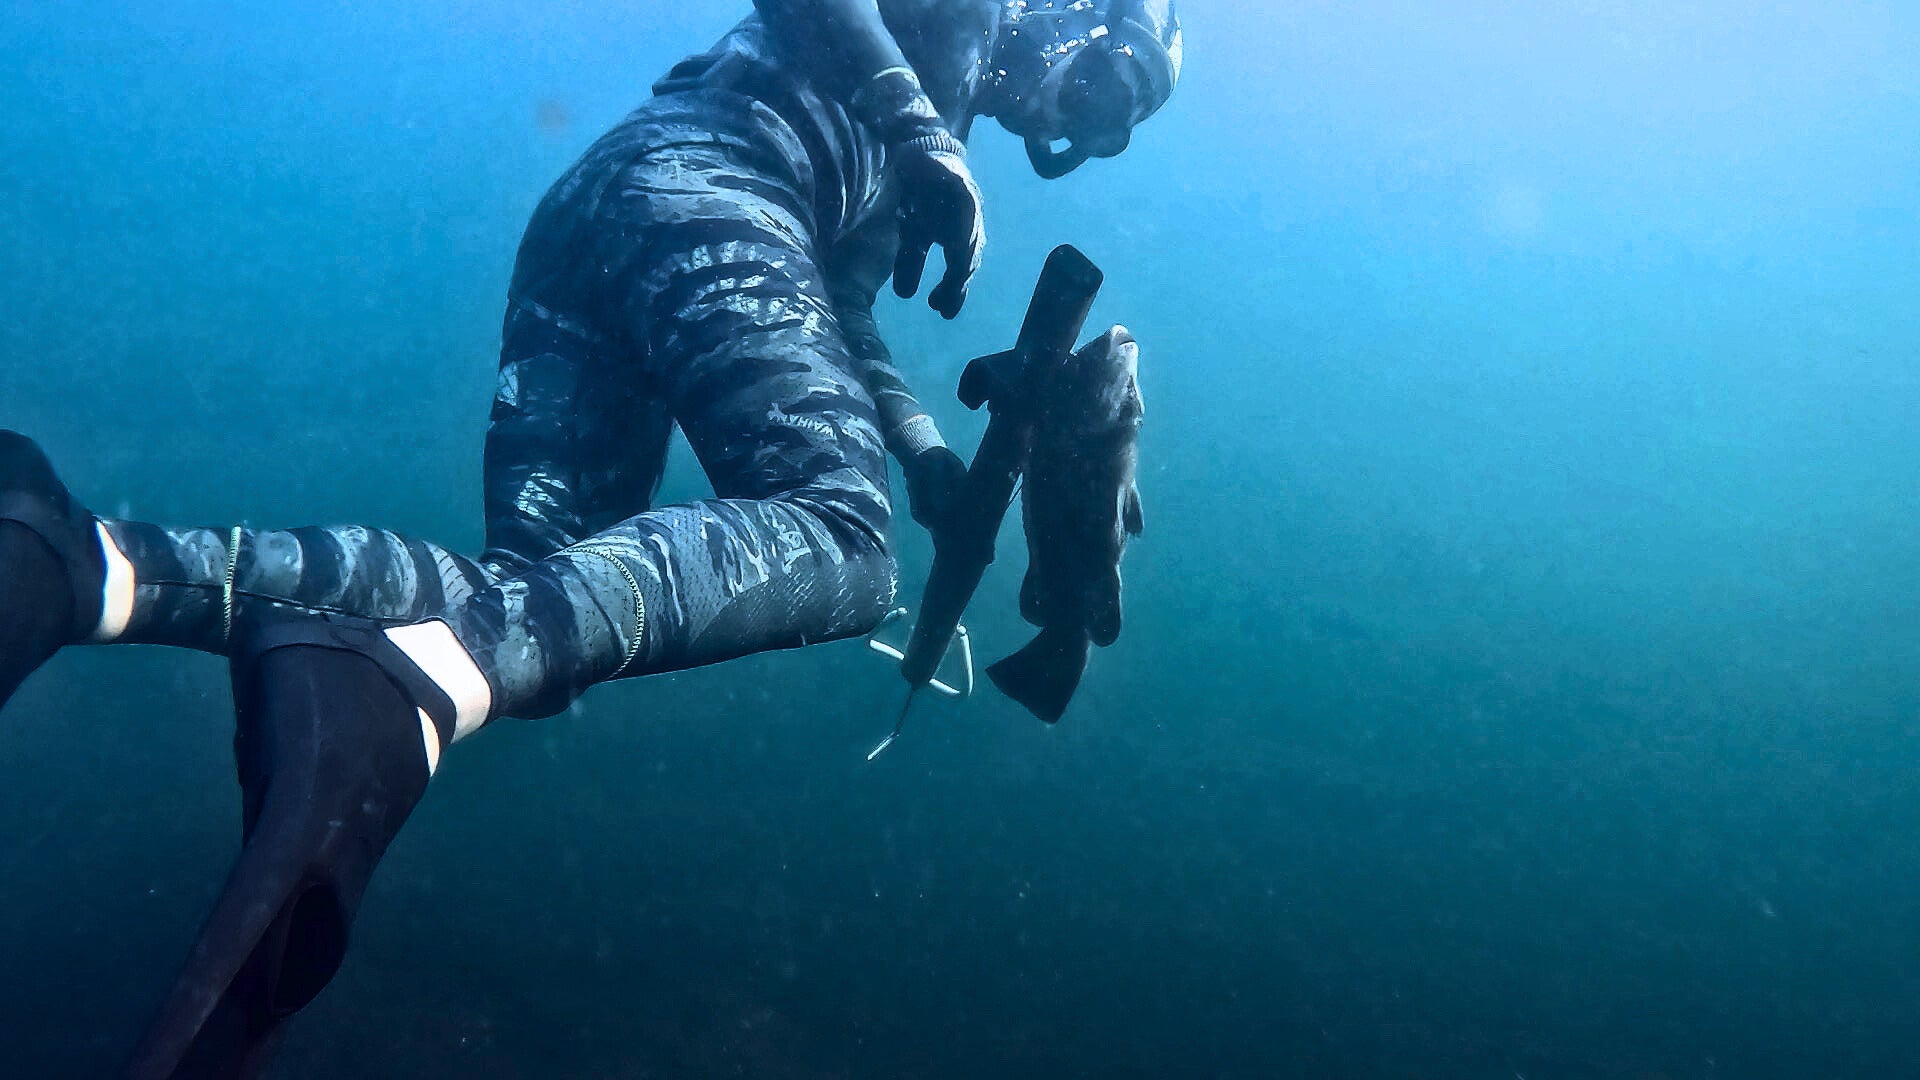 Spearfisherman underwater with gun and fish